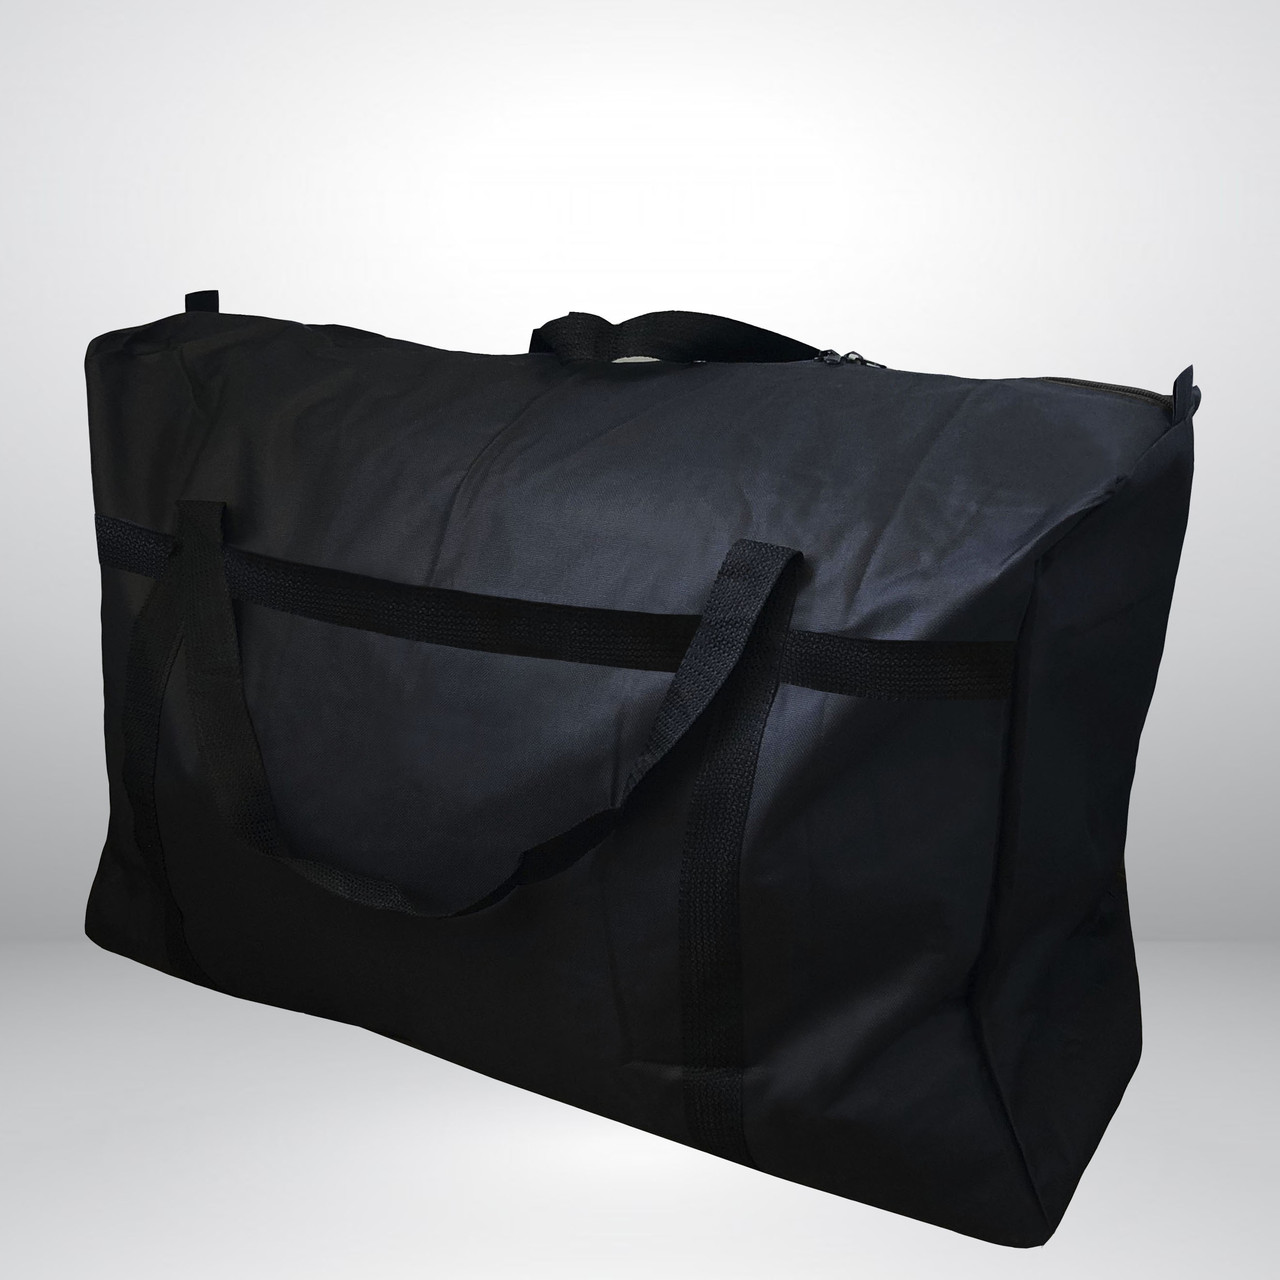 Містка чорна сумка баул 70 x 45 см тканинна водовідштовхувальна, дорожний пакет текстильний для речей, мішок для переїзду